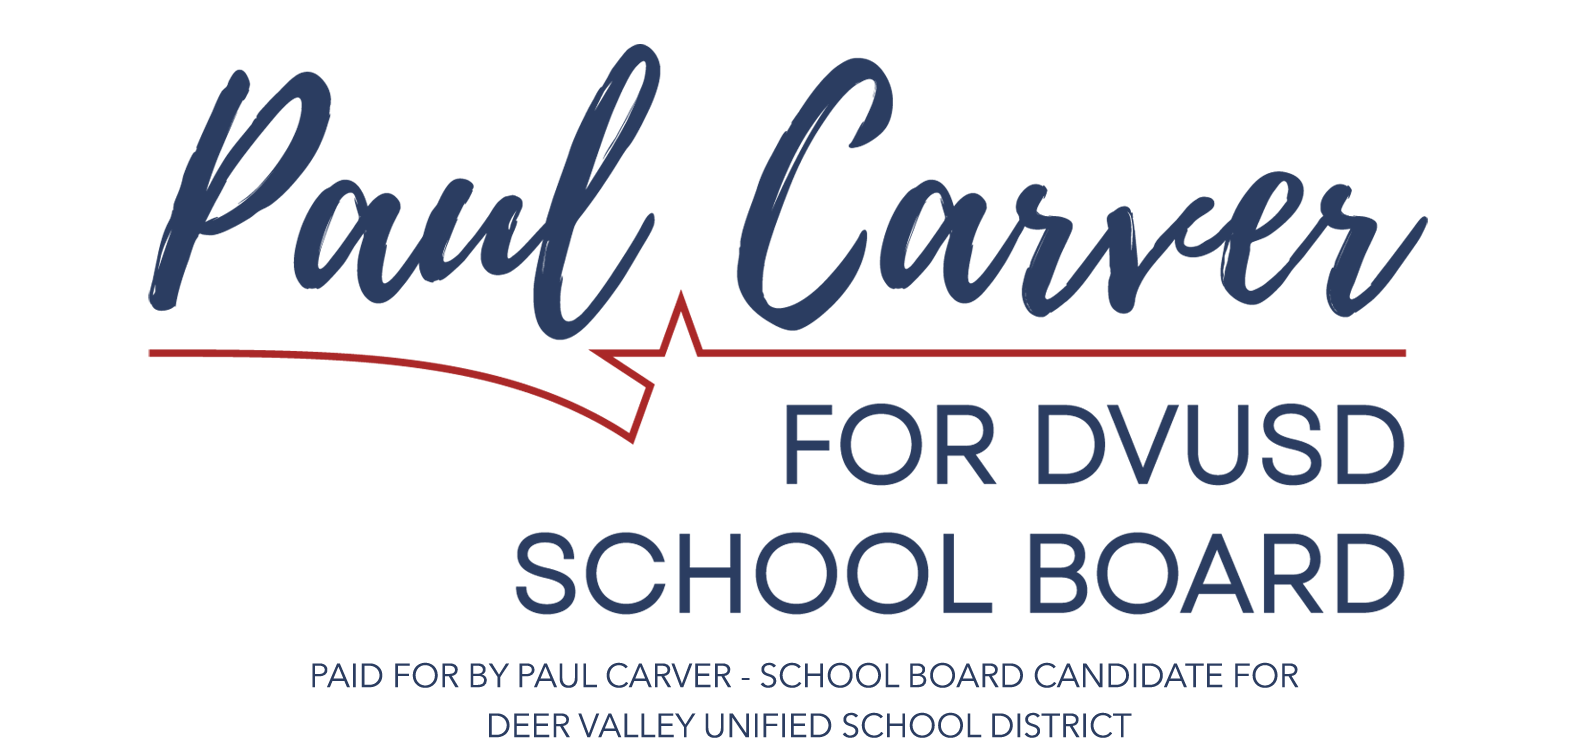 Paul for DVSD School Board